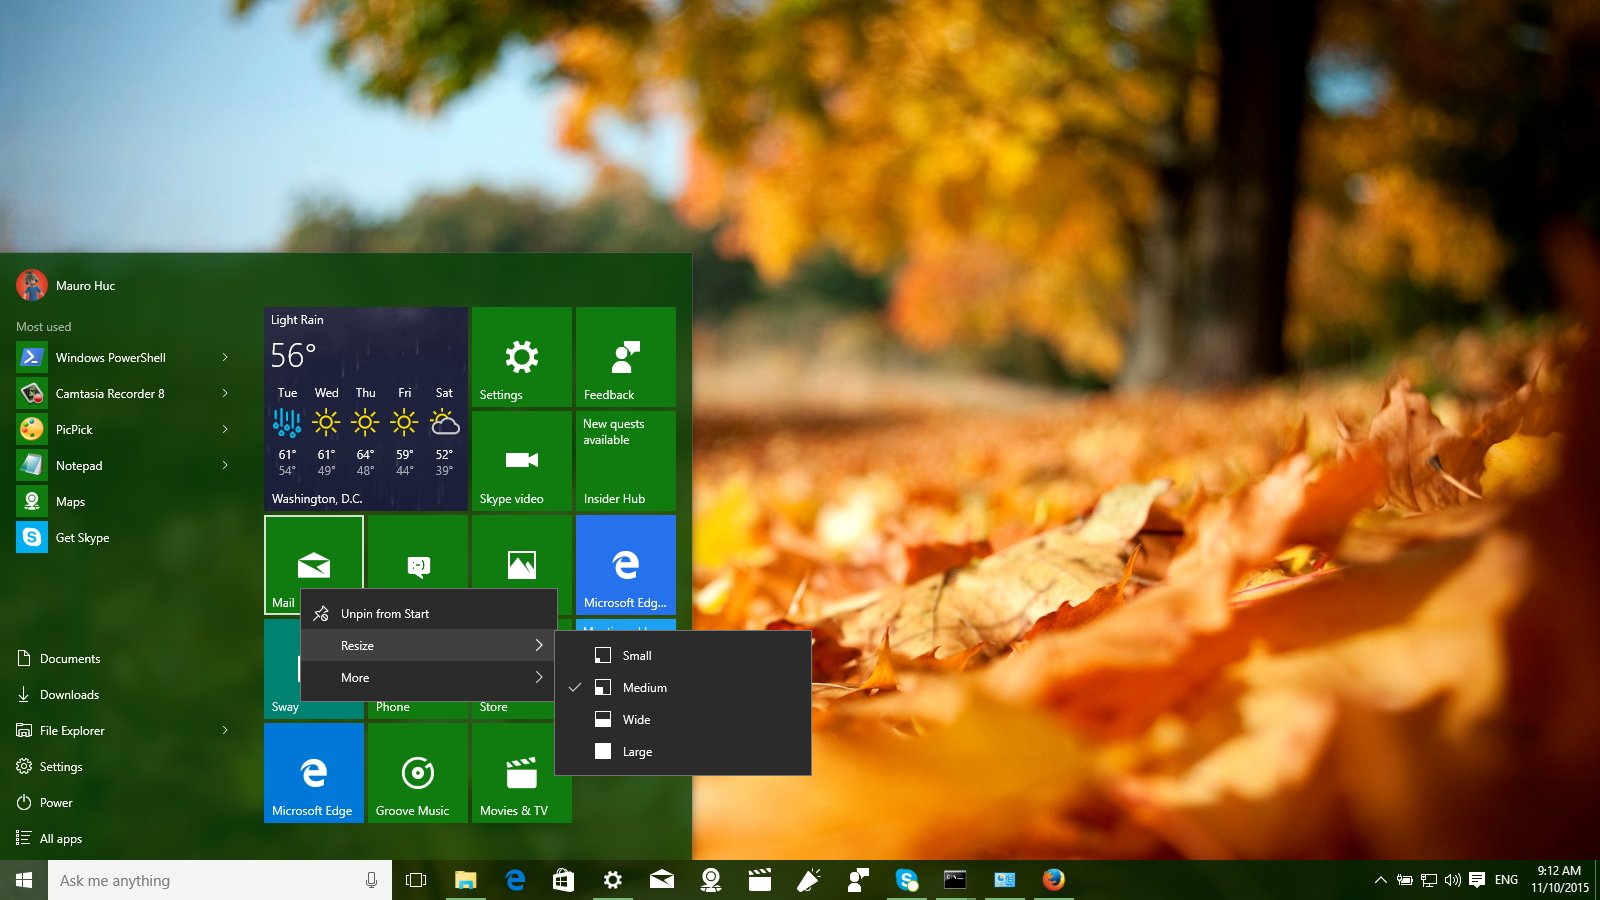 build-10586 - Những điểm mới trong bản cập nhật Windows 10 build 10586 Smart-resize-menu-fallupdate1